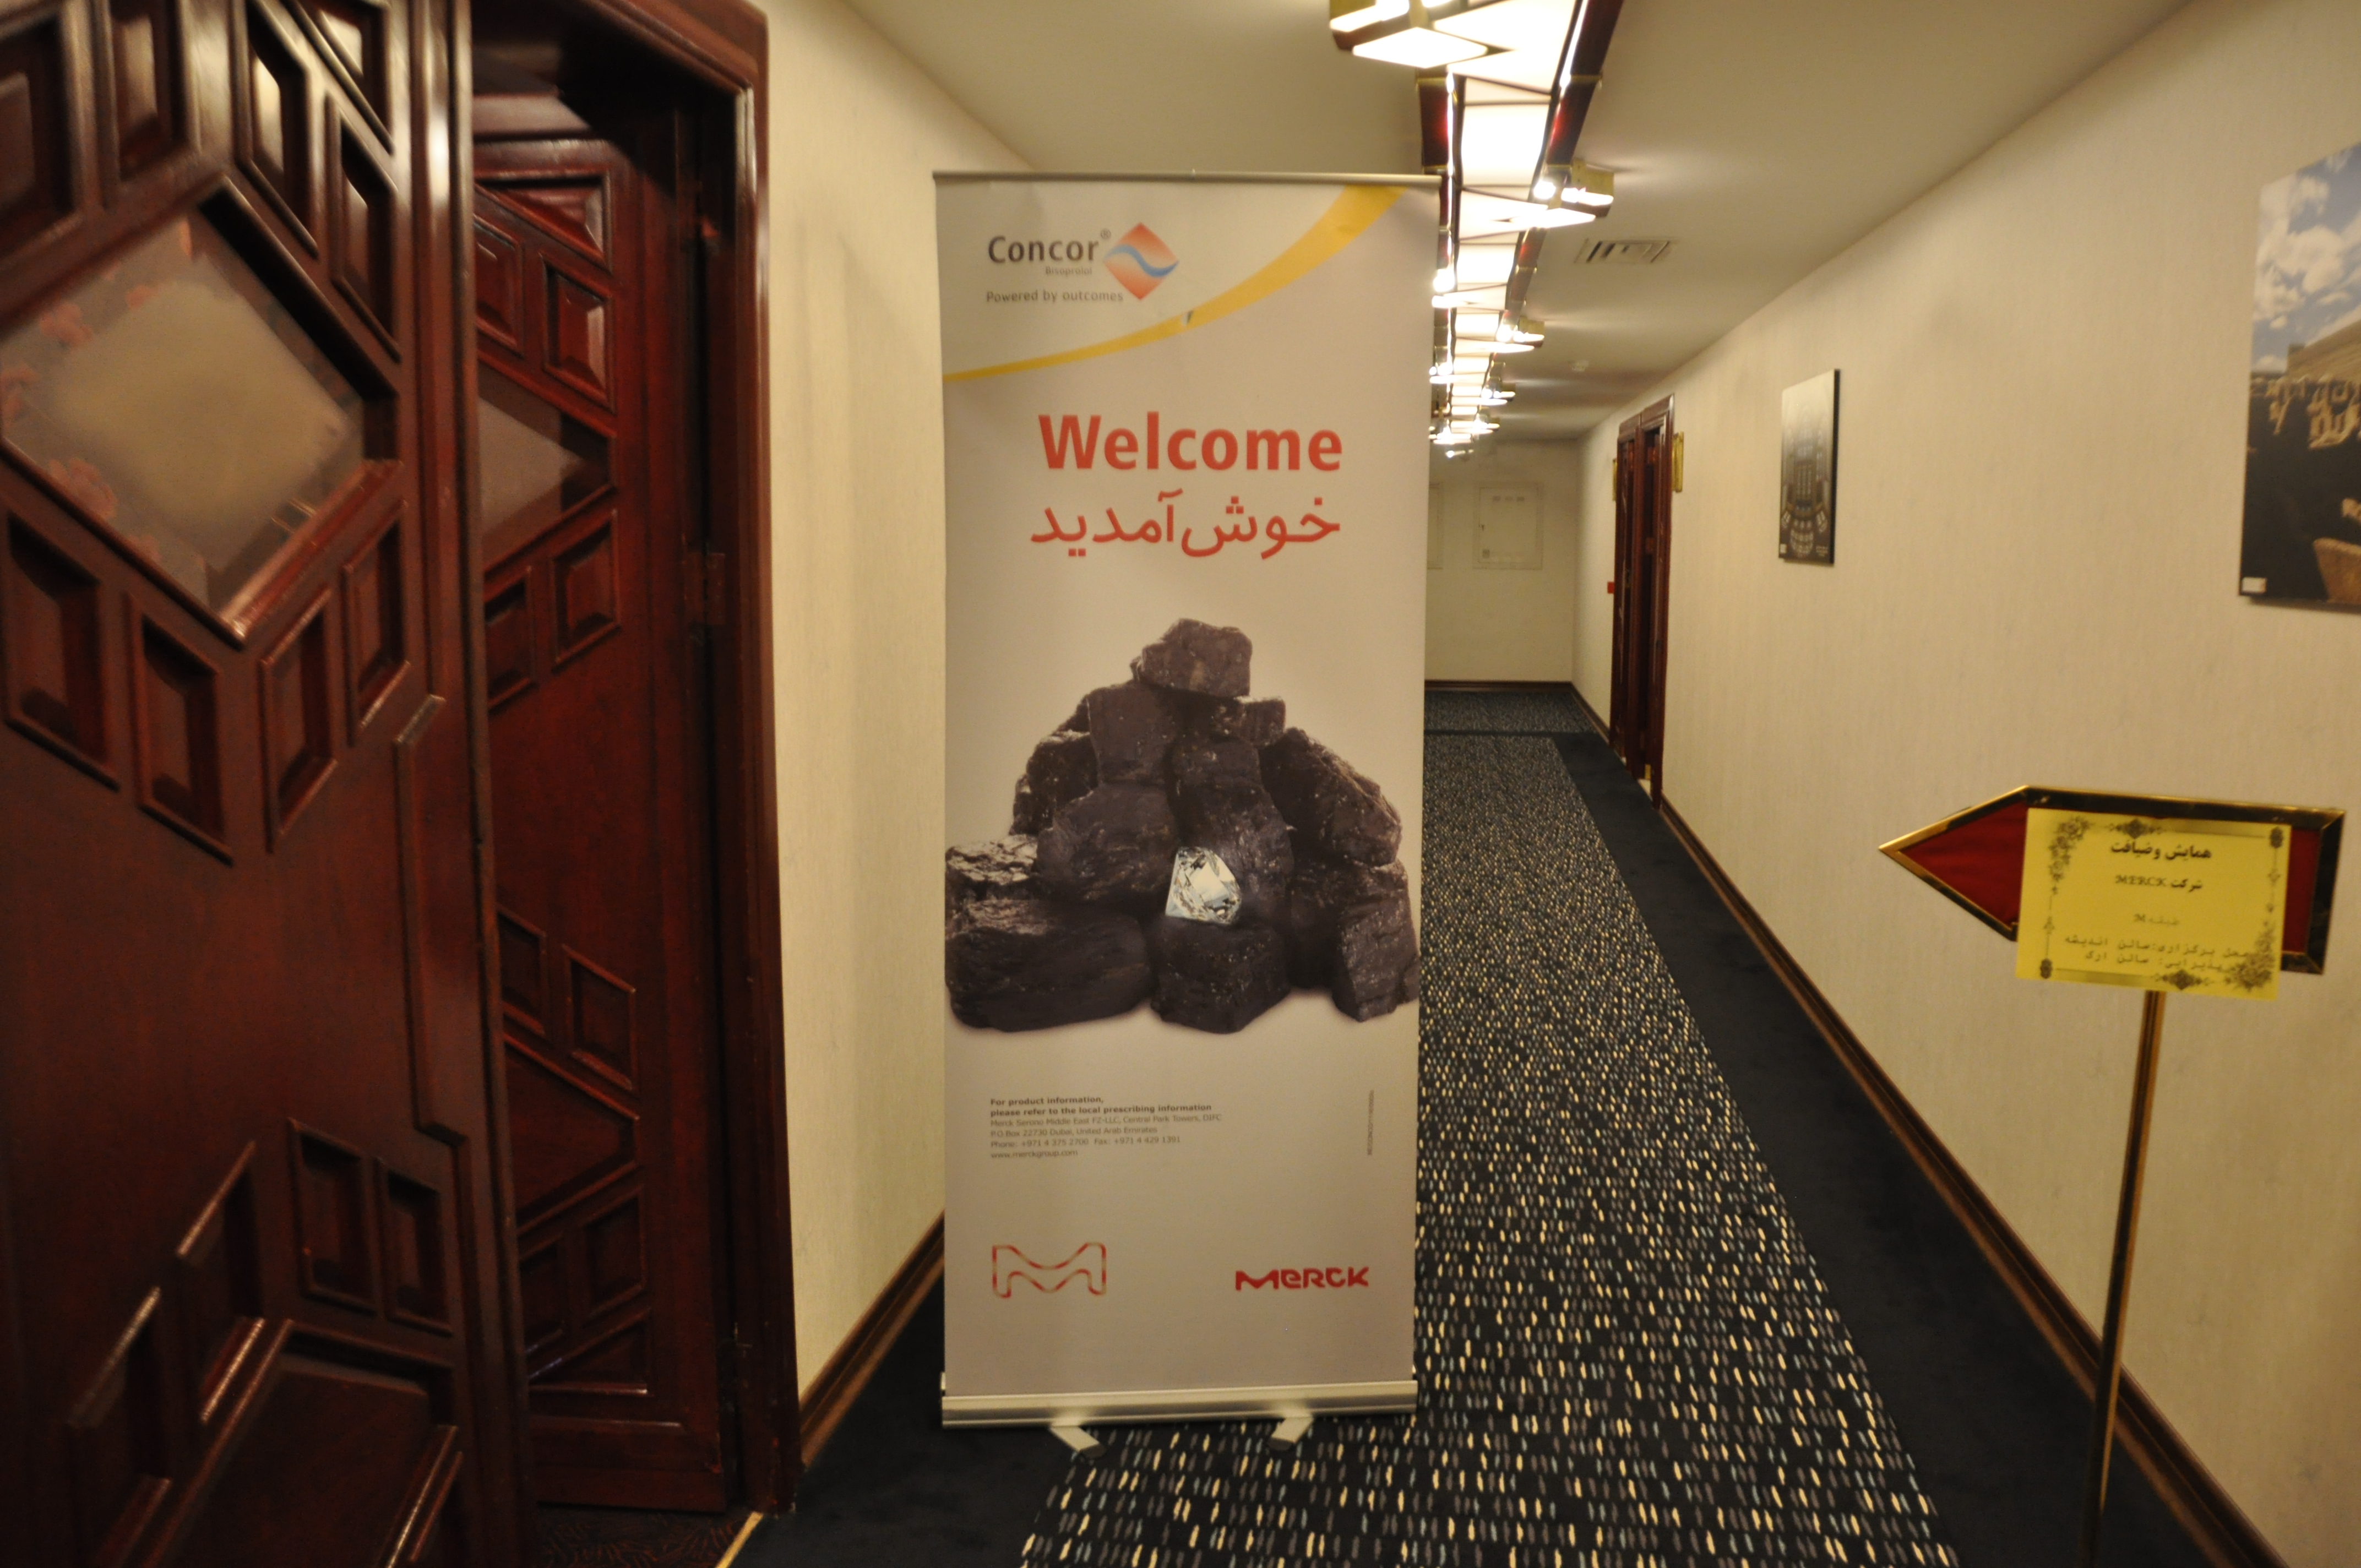 حضور شرکت Merck در هتل پارس کرمان